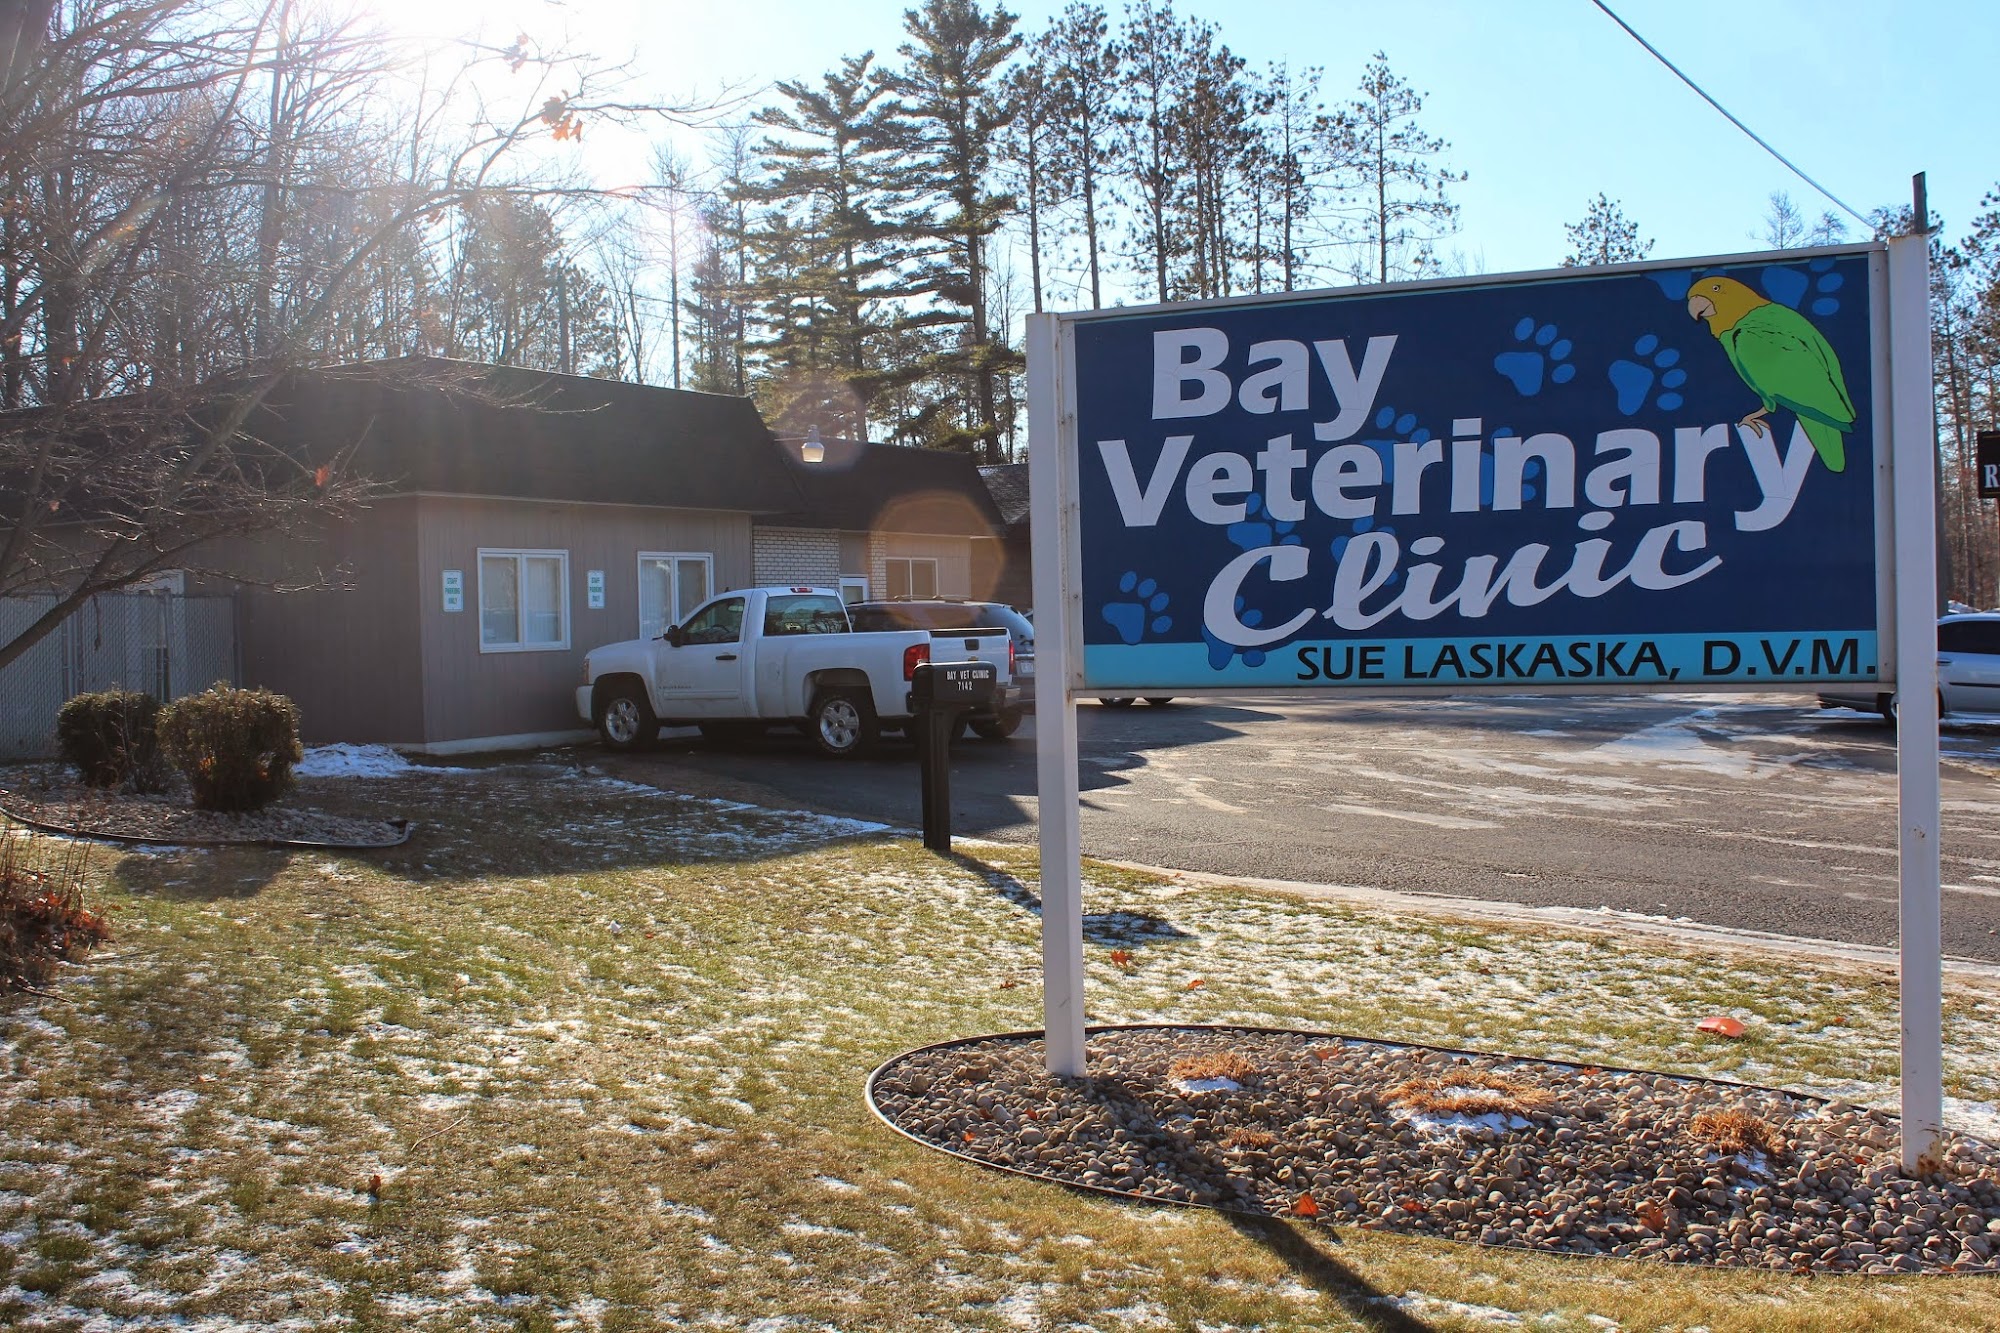 Bay Veterinary Clinic